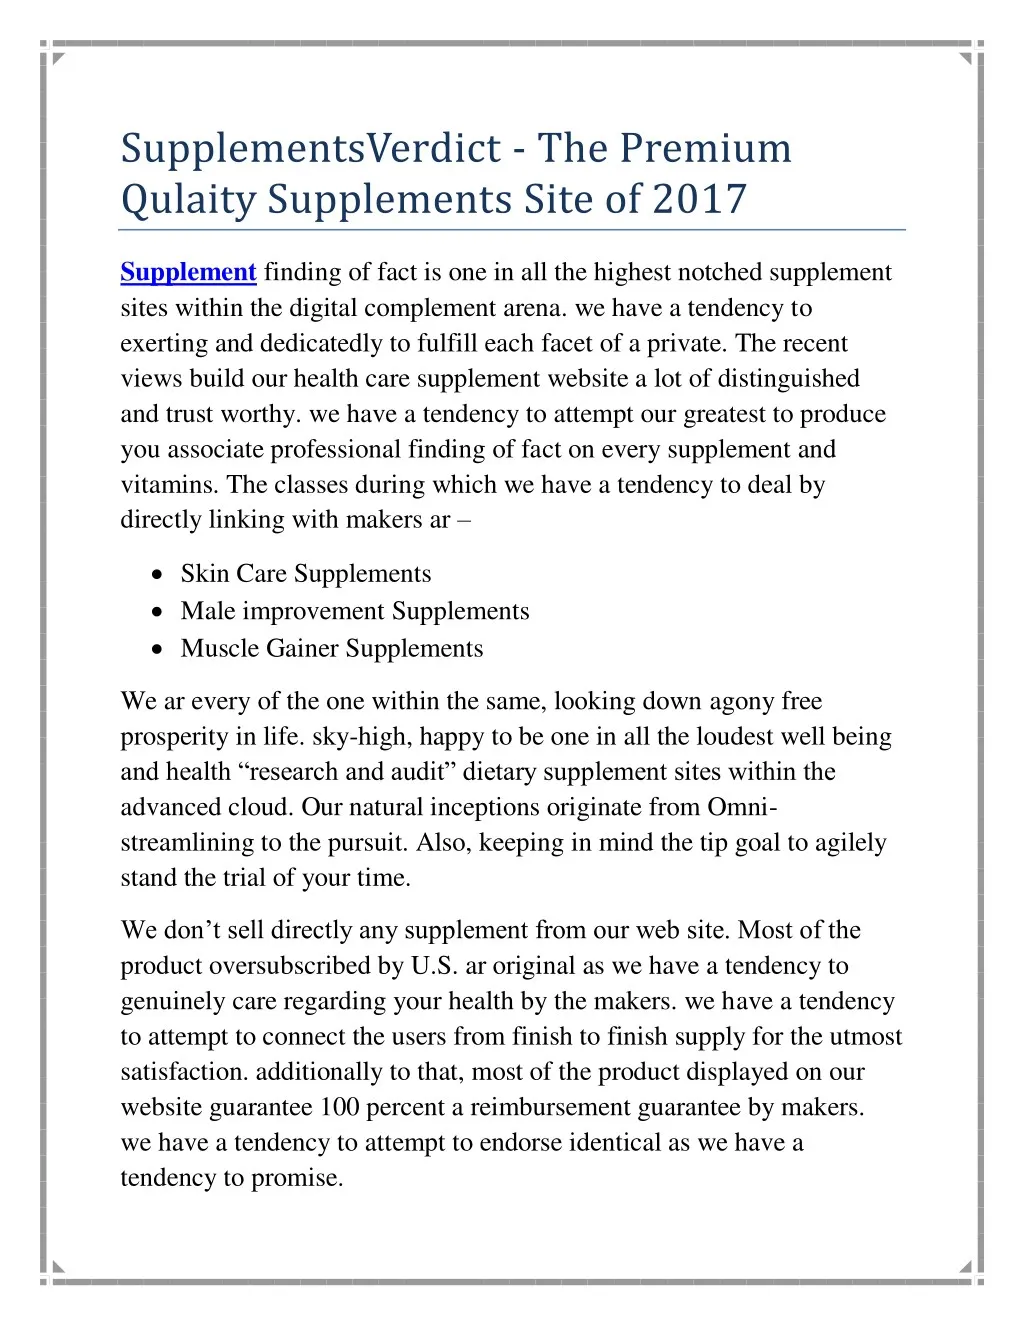 supplementsverdict the premium qulaity